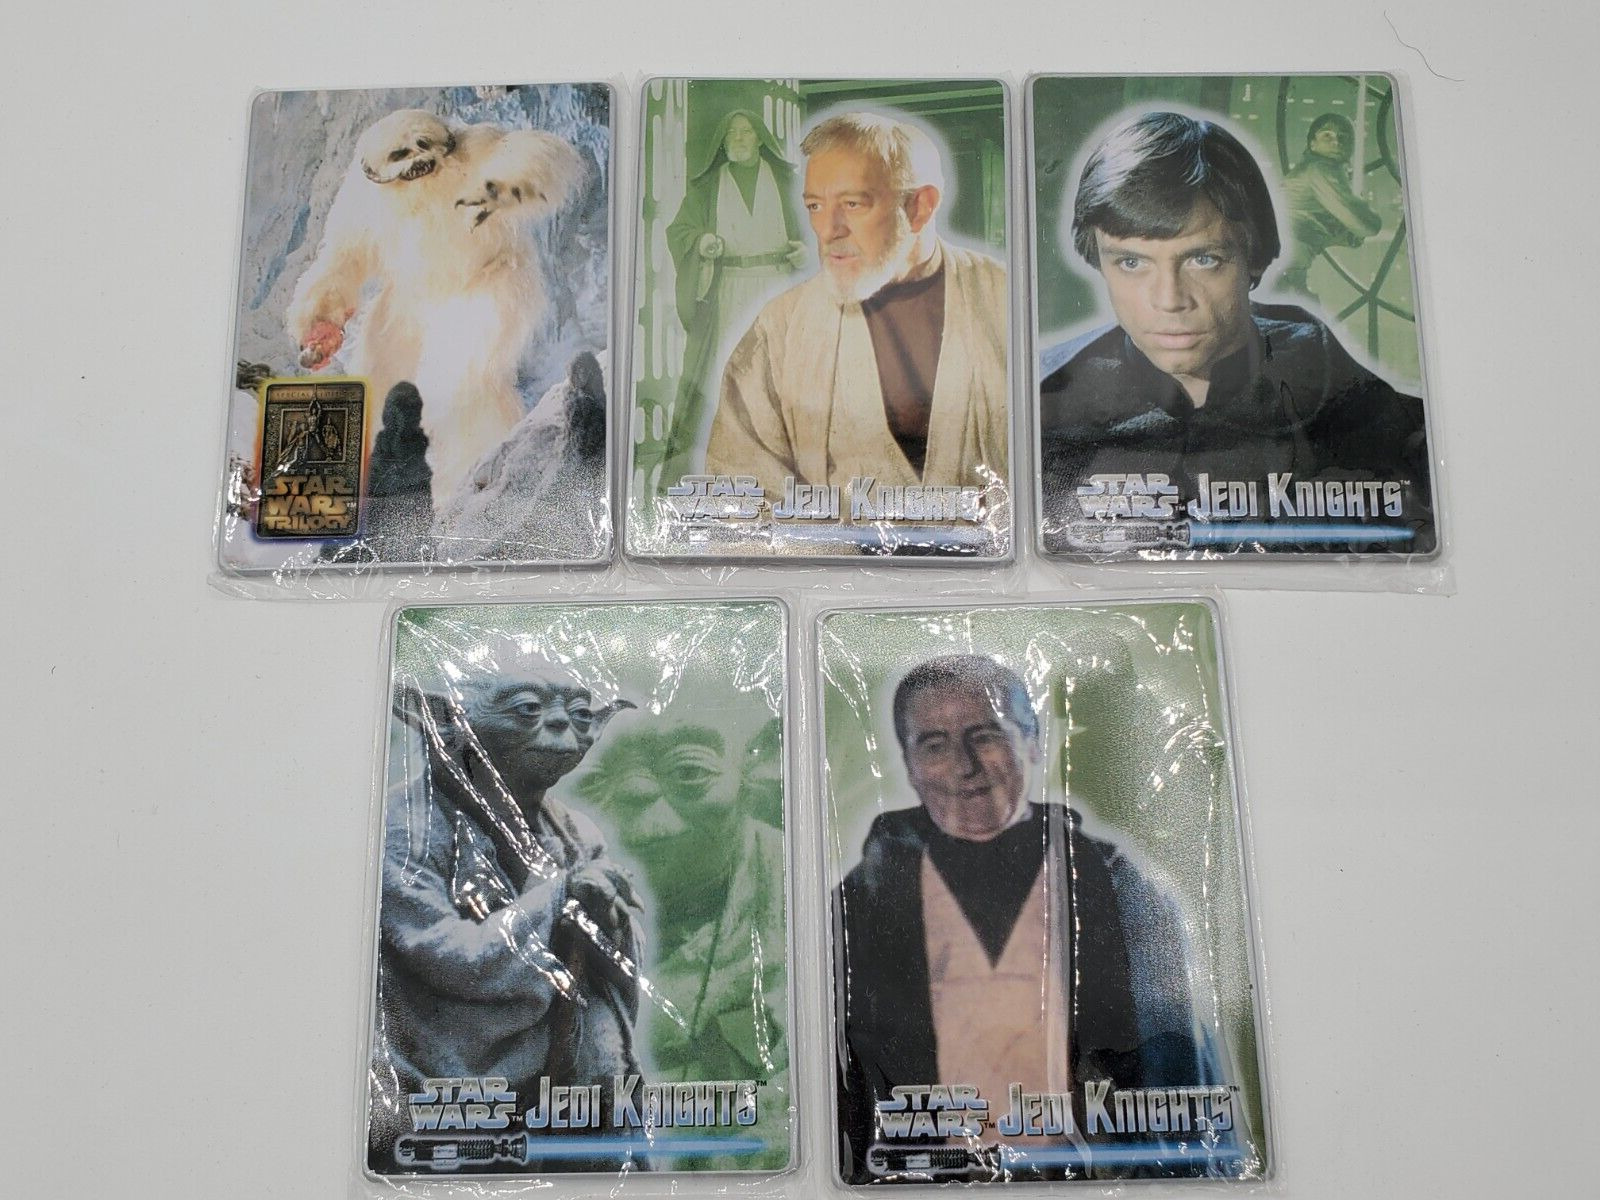 Star Wars Jedi Knights 1998 Metallic Impressions Metal Trading Card Lot x 5